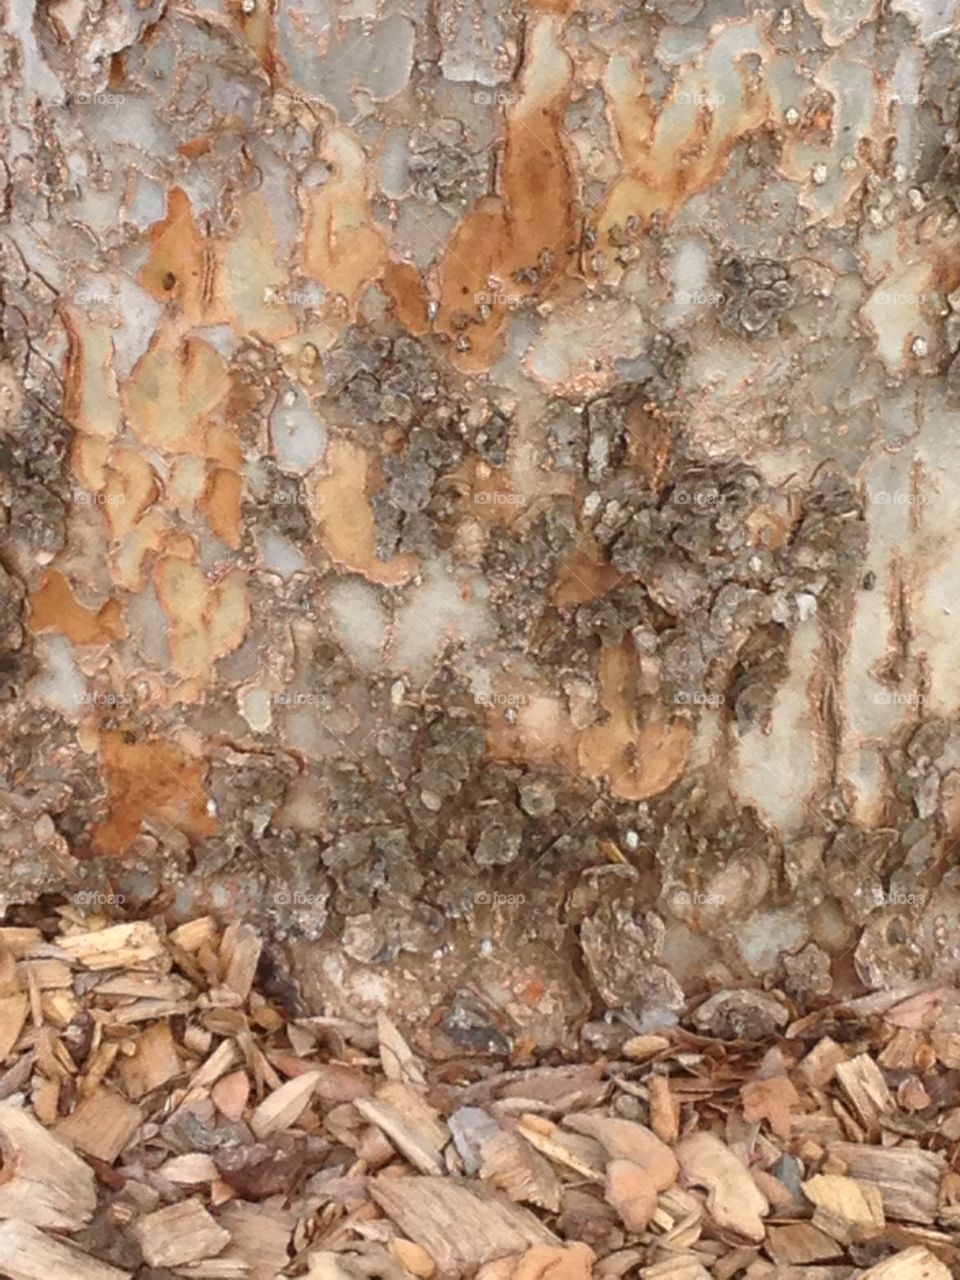 Tree and bark